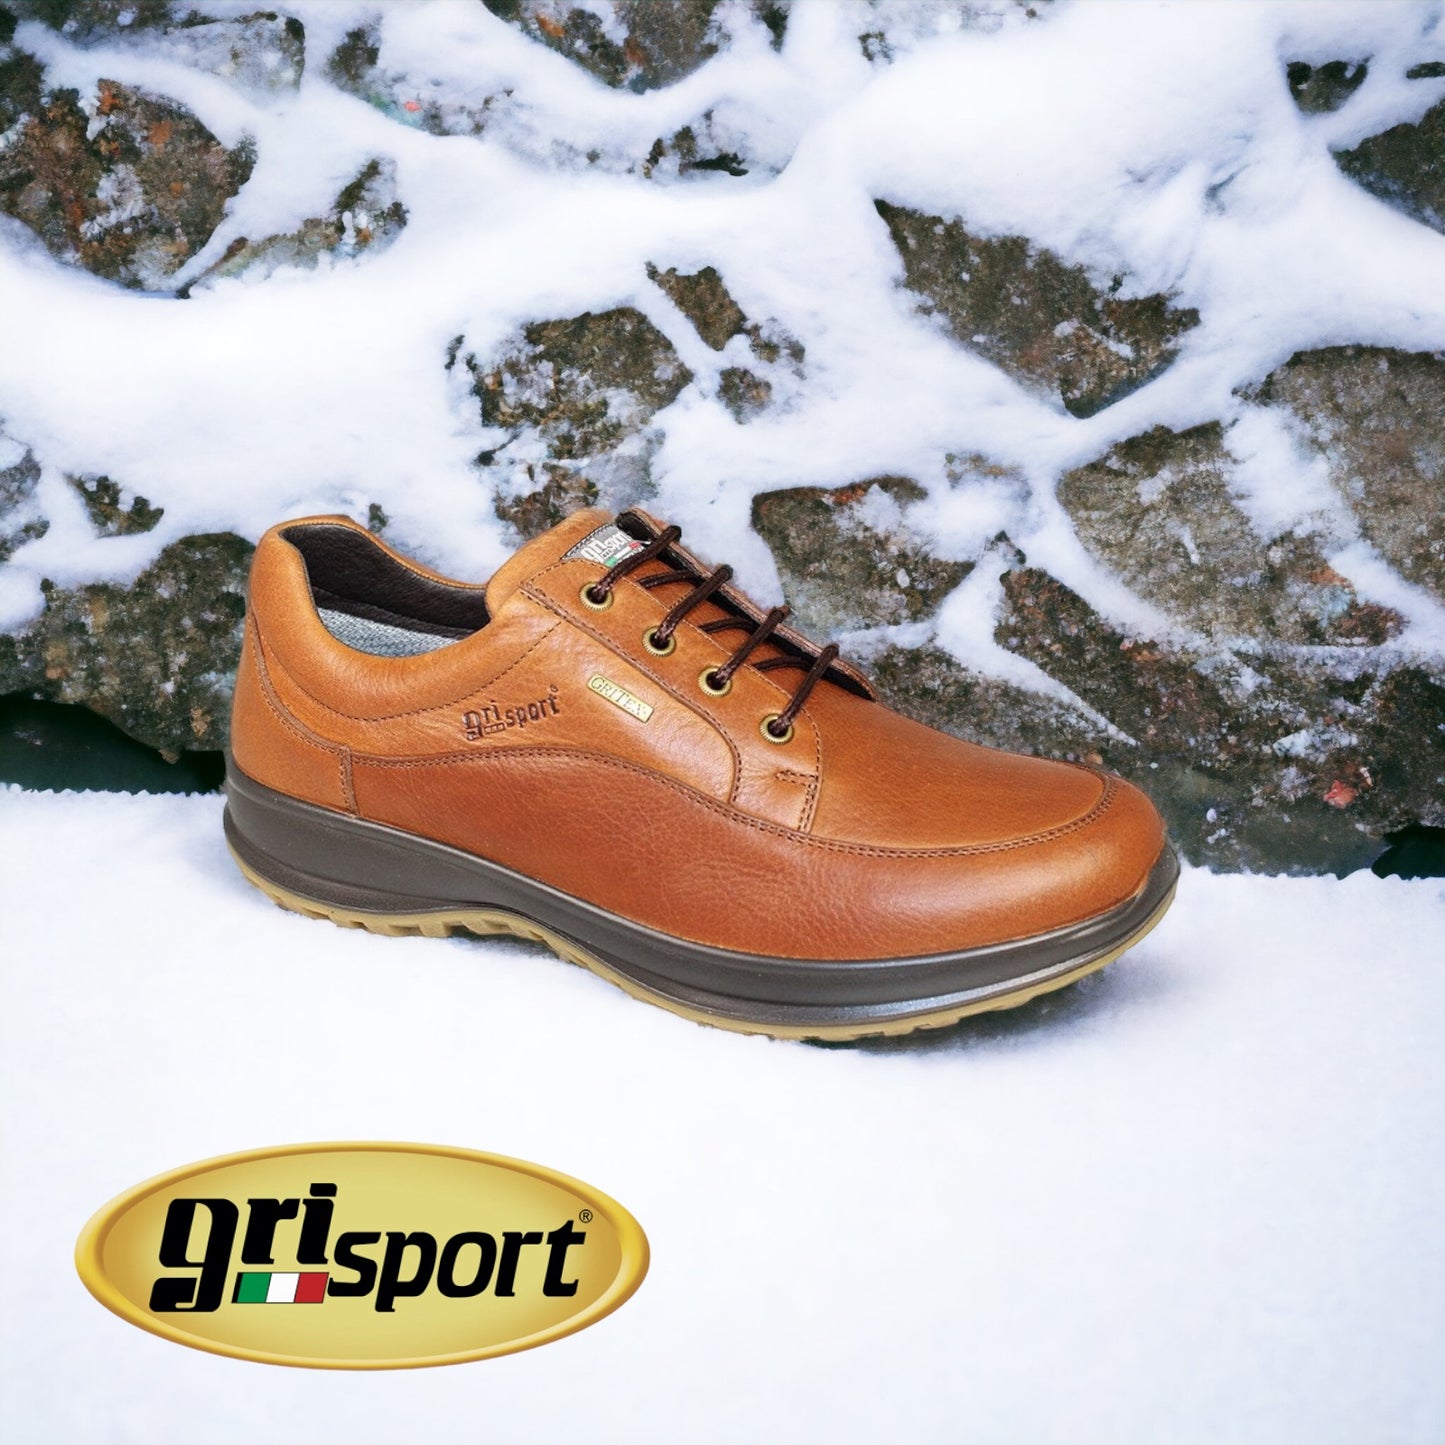 Gri Sport Livingston waterproof tan - Kirbys Footwear Ltd